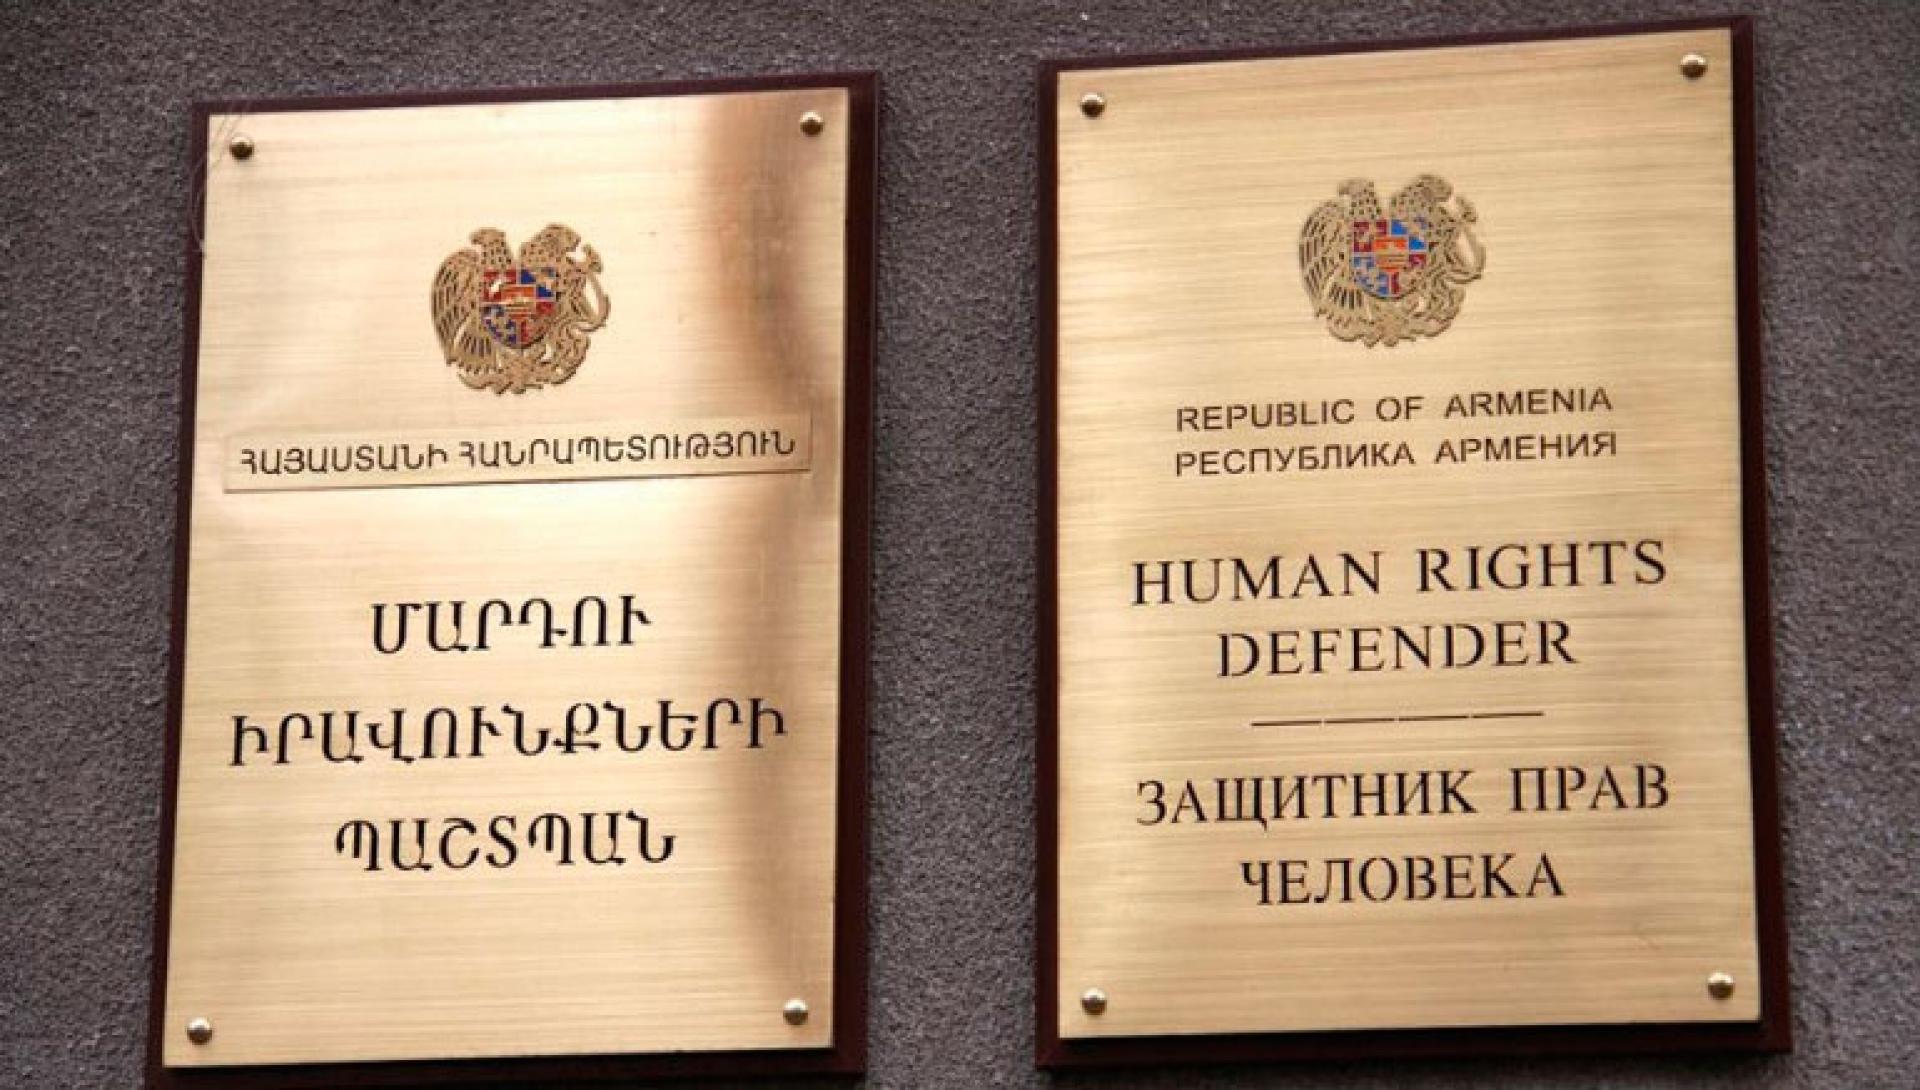 Азербайджан незаконно захватывают пароли соцсетей армянских заключенных - Омбудсмен